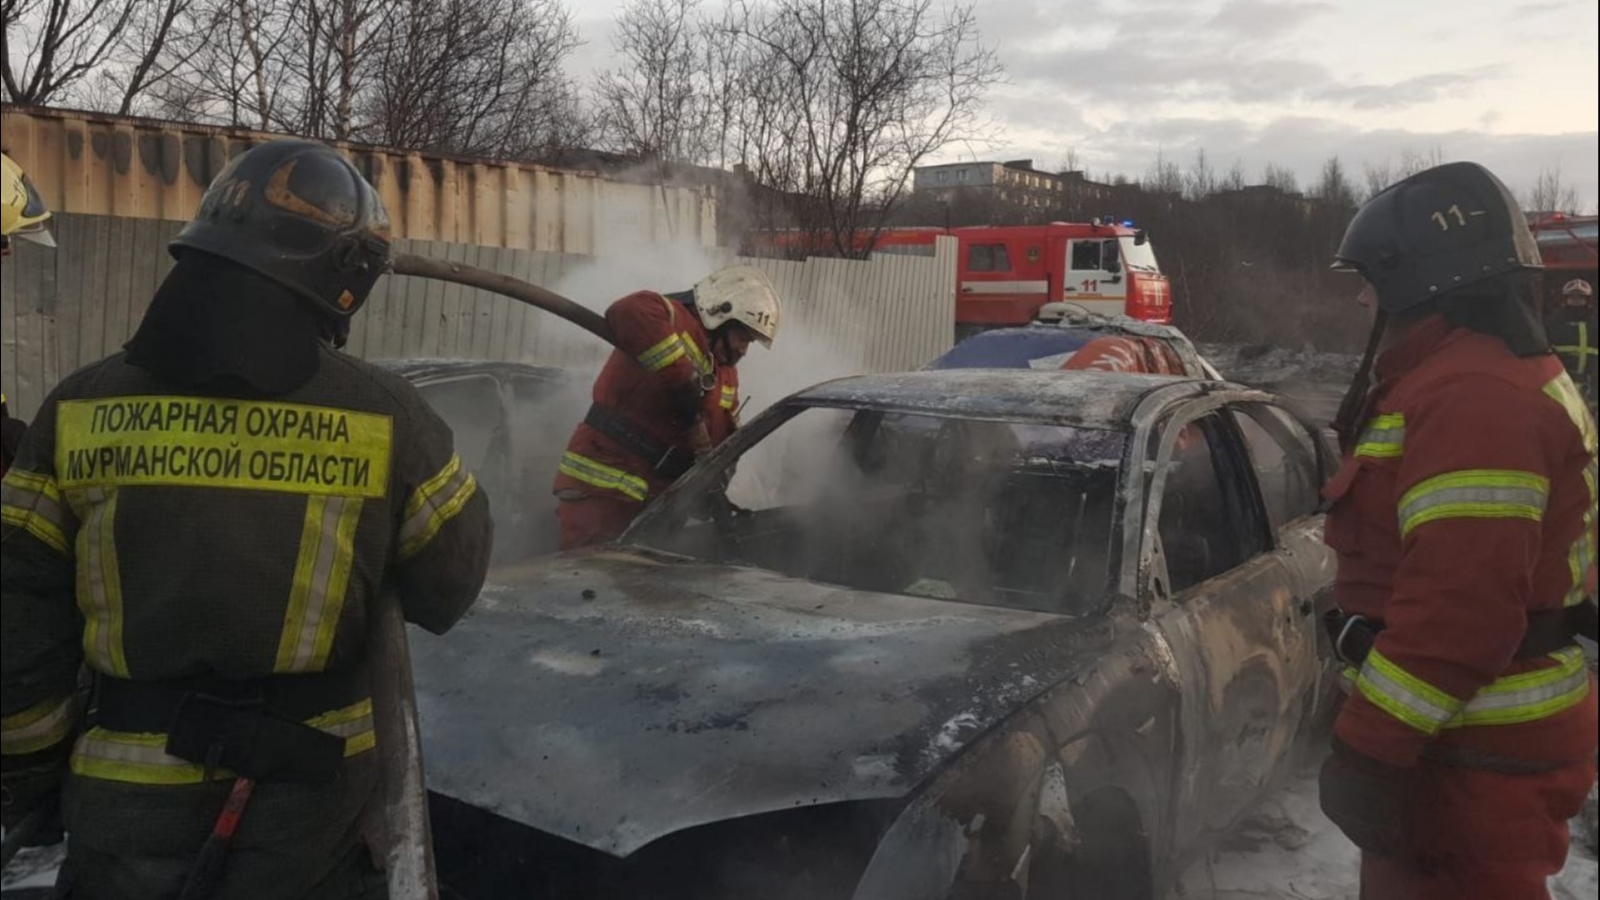 Во дворе в Росляково сгорели две машины Ford